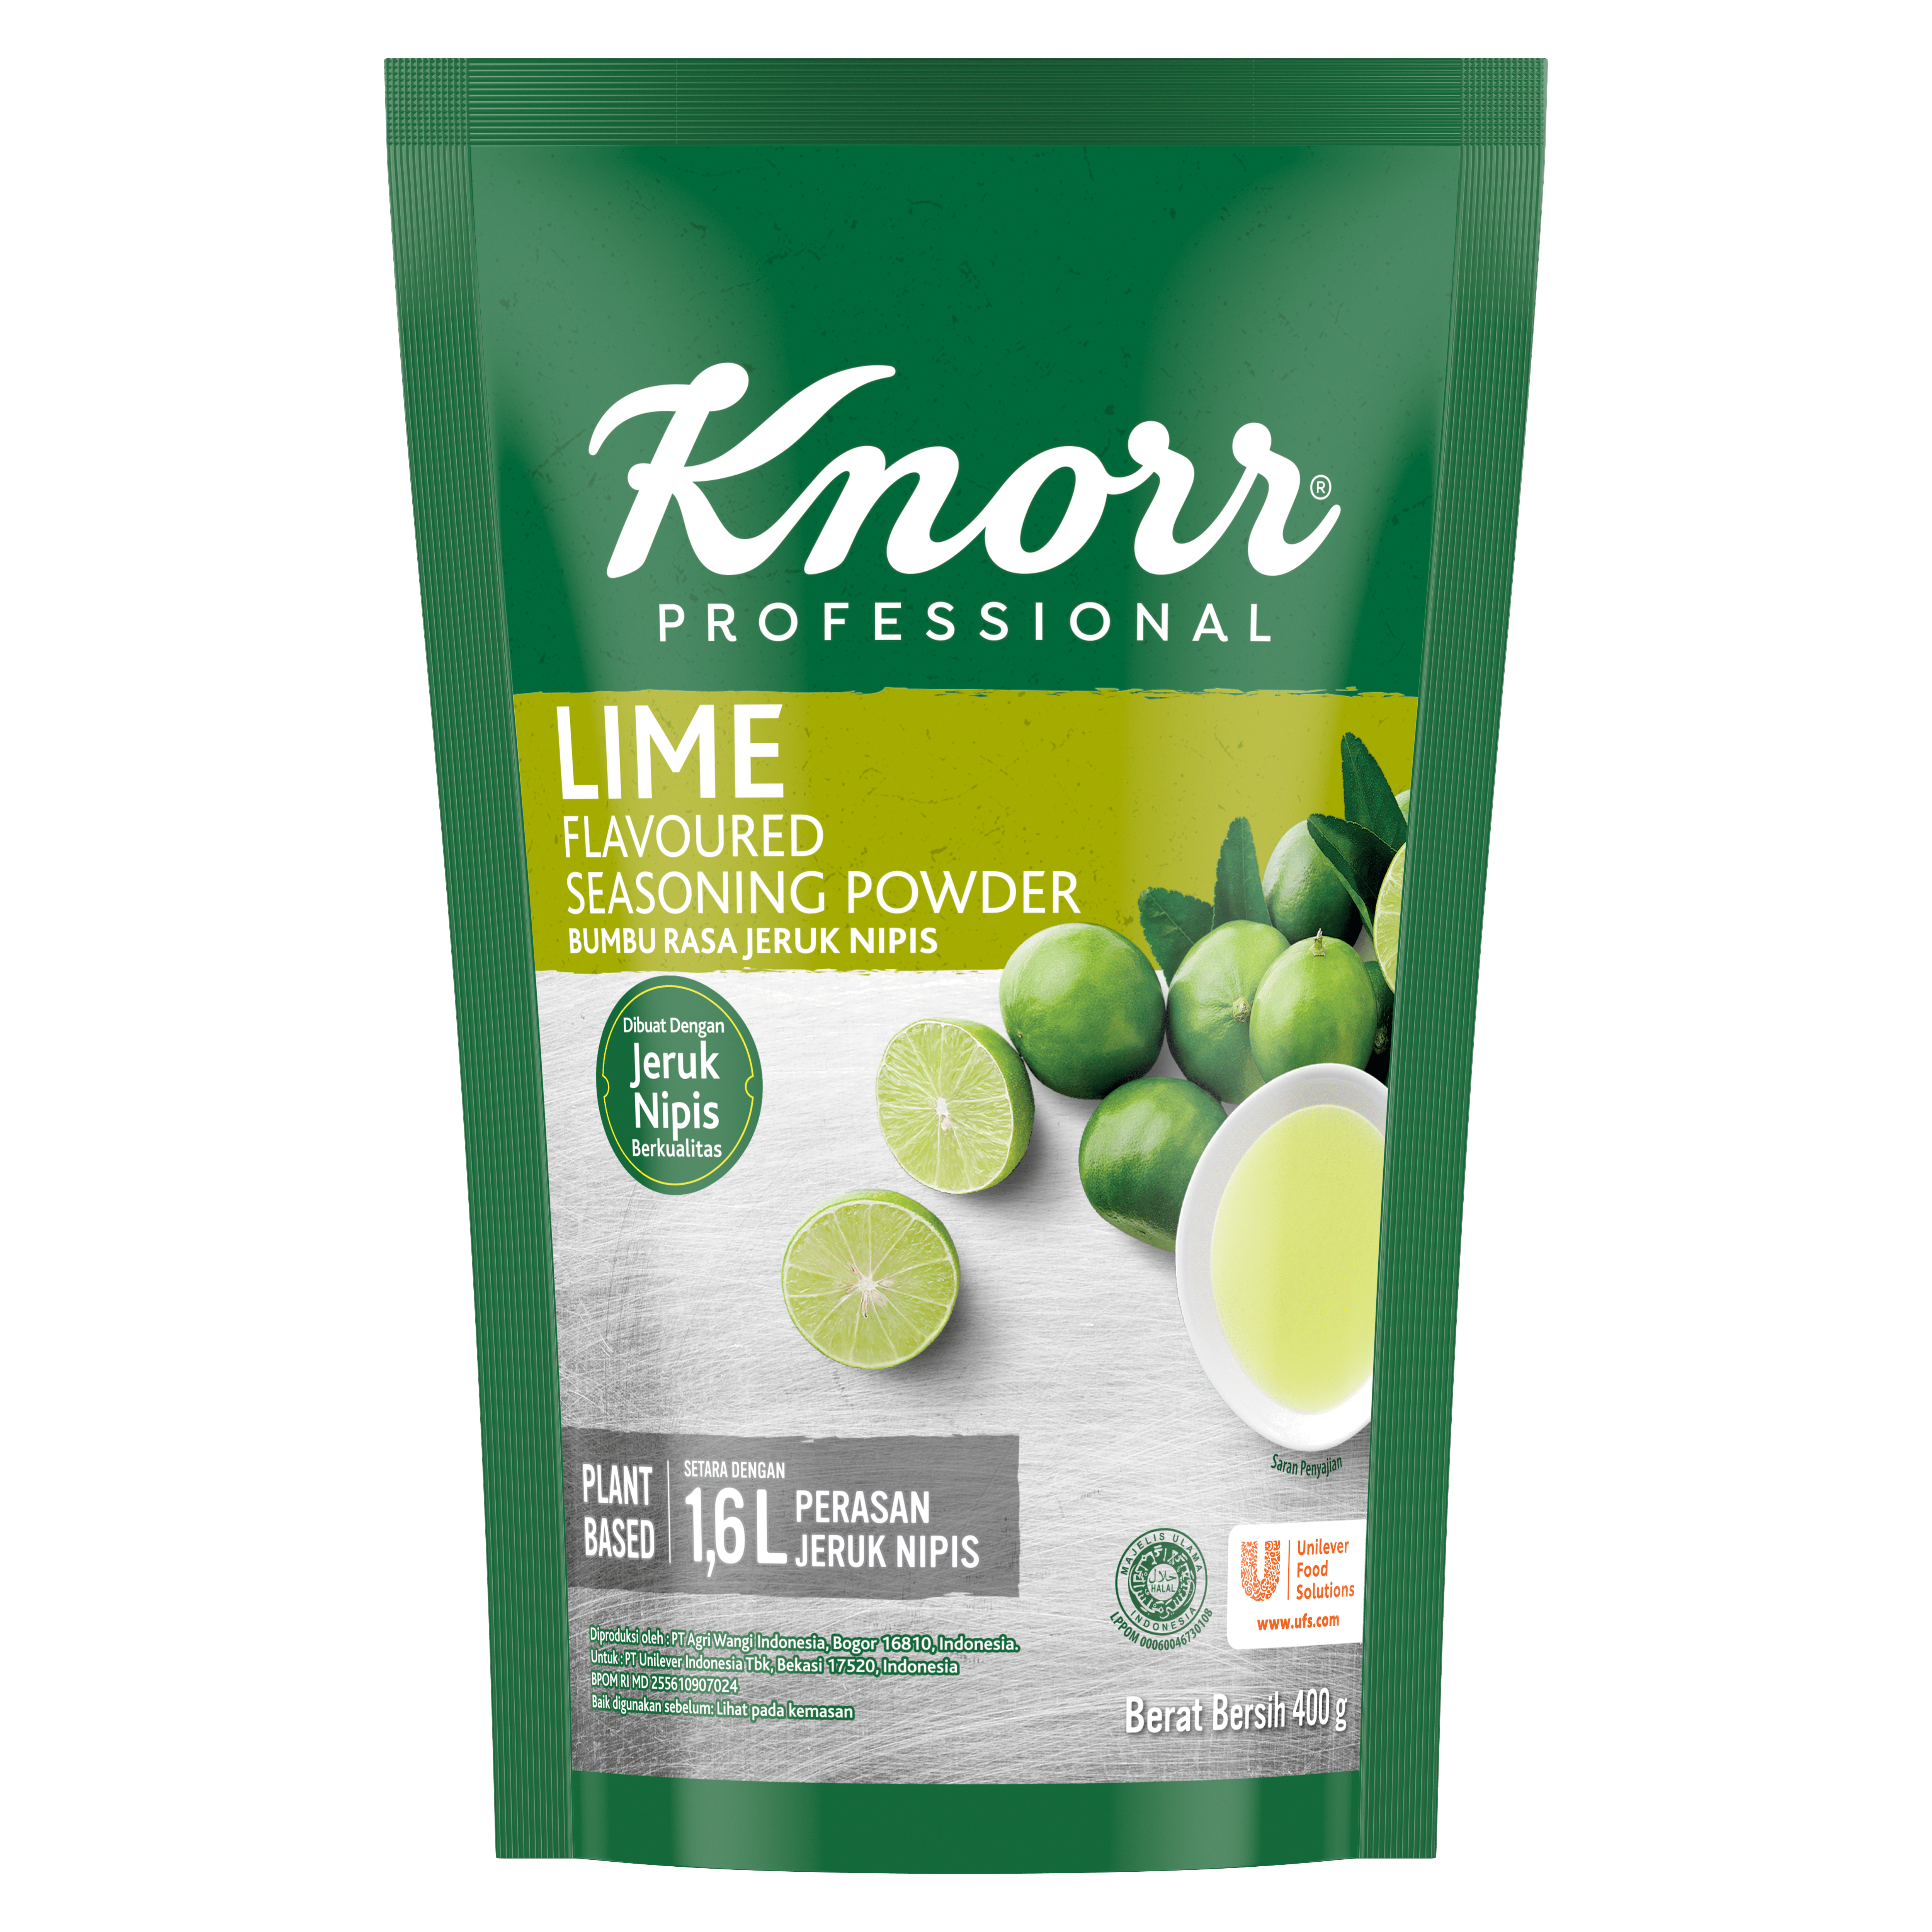 Knorr Bumbu Rasa Jeruk Nipis 400g - Knorr Lime Powder, bubuk jeruk nipis berkualitas yang mudah dibuat dan dapat digunakan untuk berbagai hidangan.